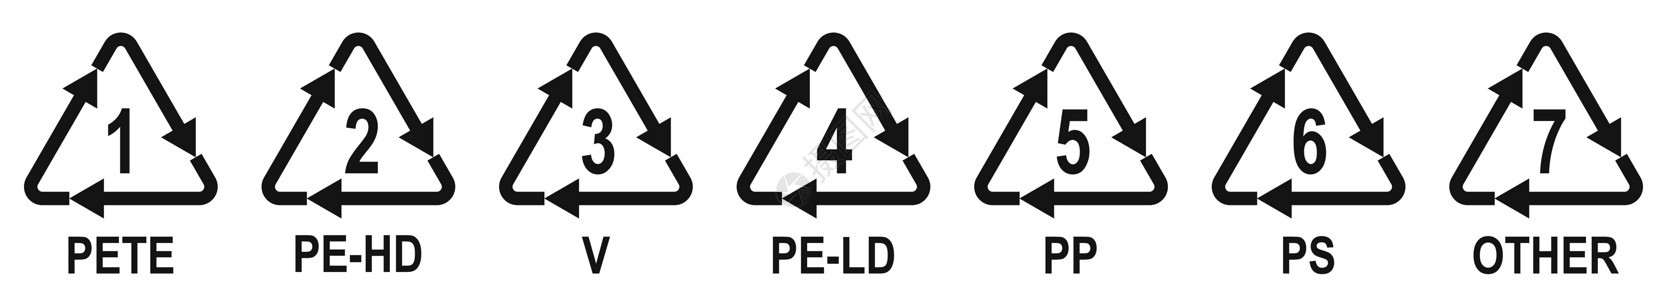 塑料包装材料的标识码塑料再循环符号 塑料回收符号代码适应症环境食物树脂插图鉴别安全材料宠物图片